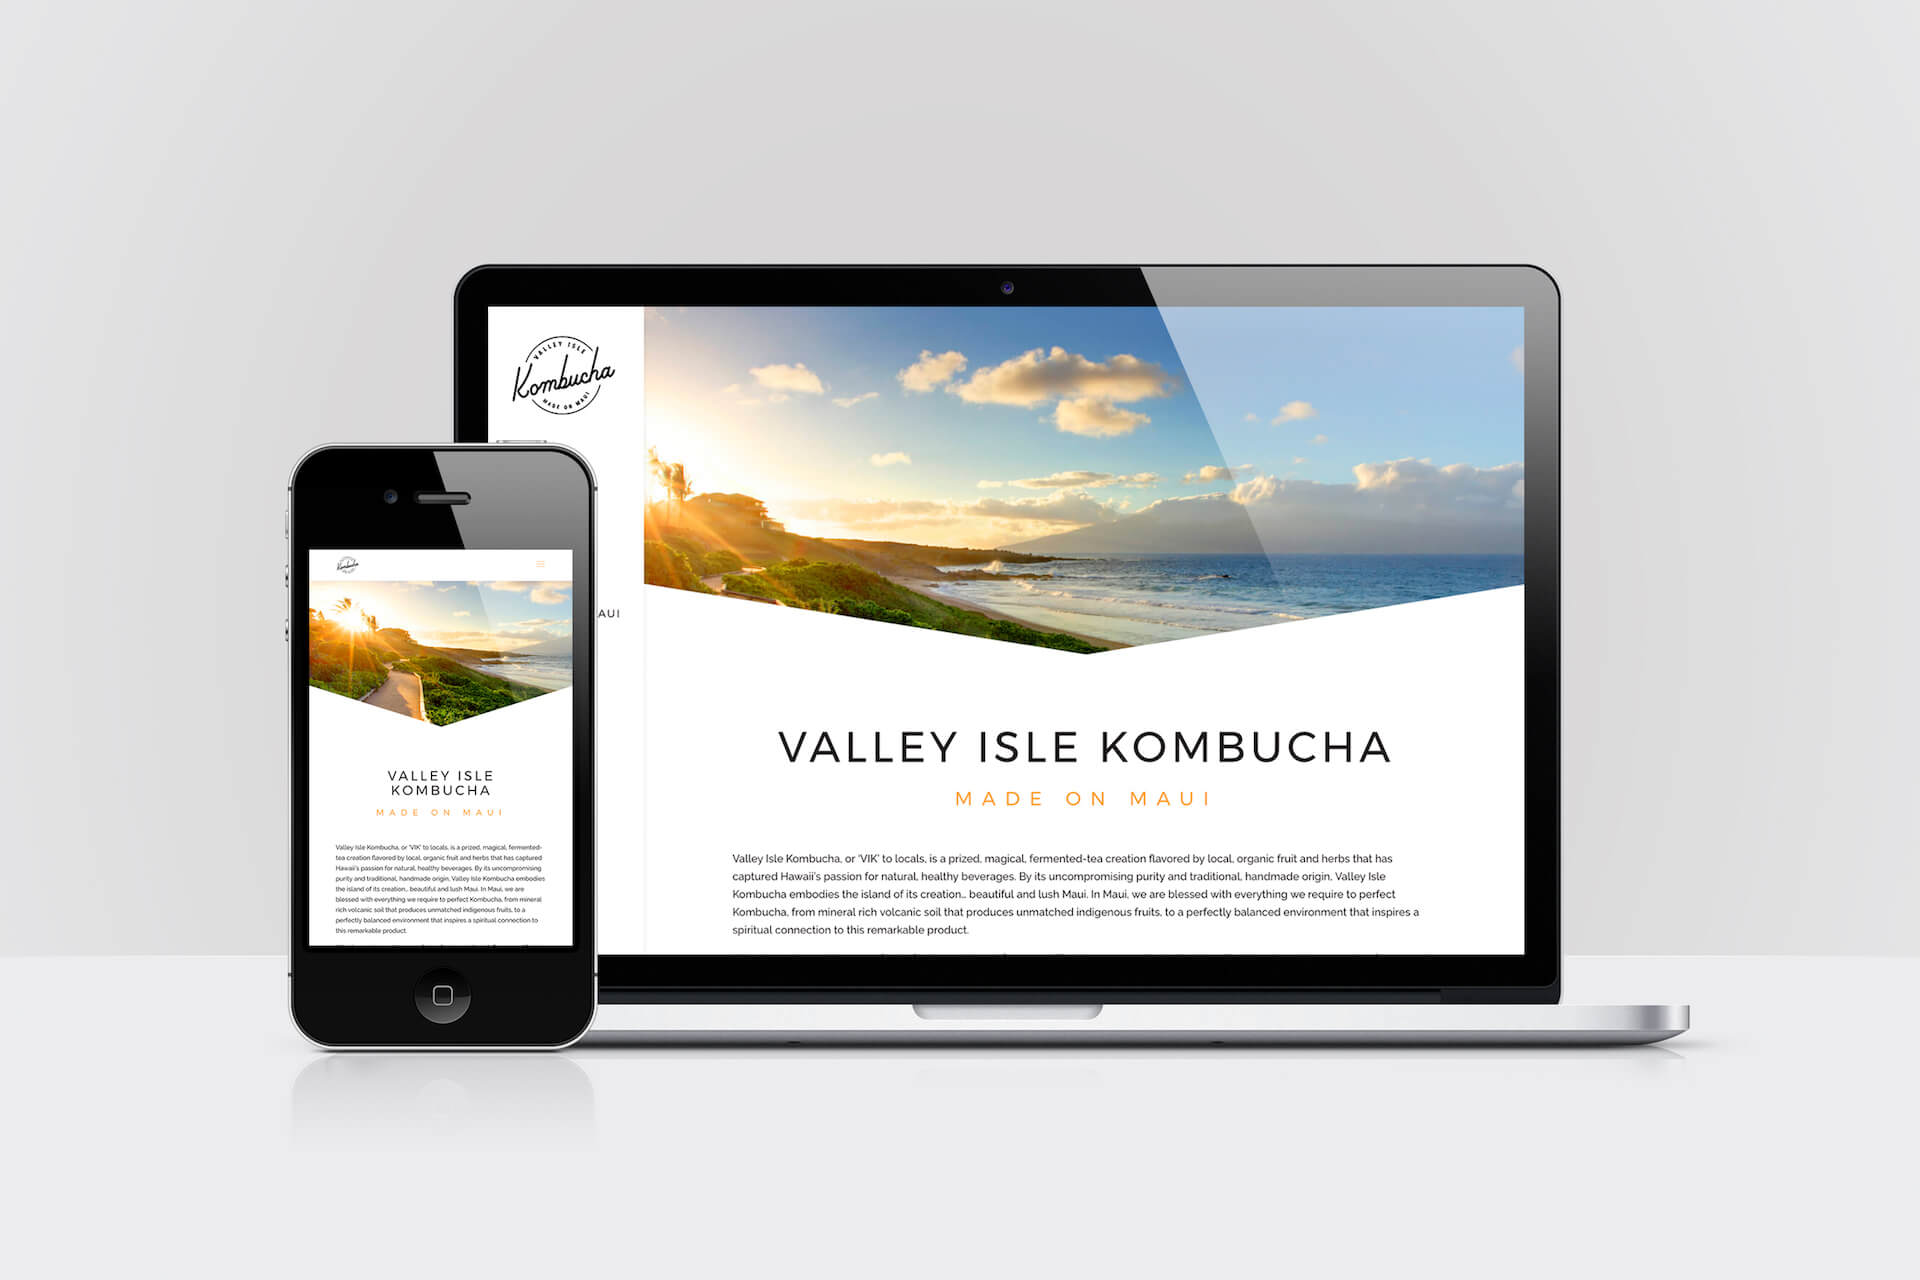 Technology Aloha, LLC - Kailua-Kona, HI, US, create a website